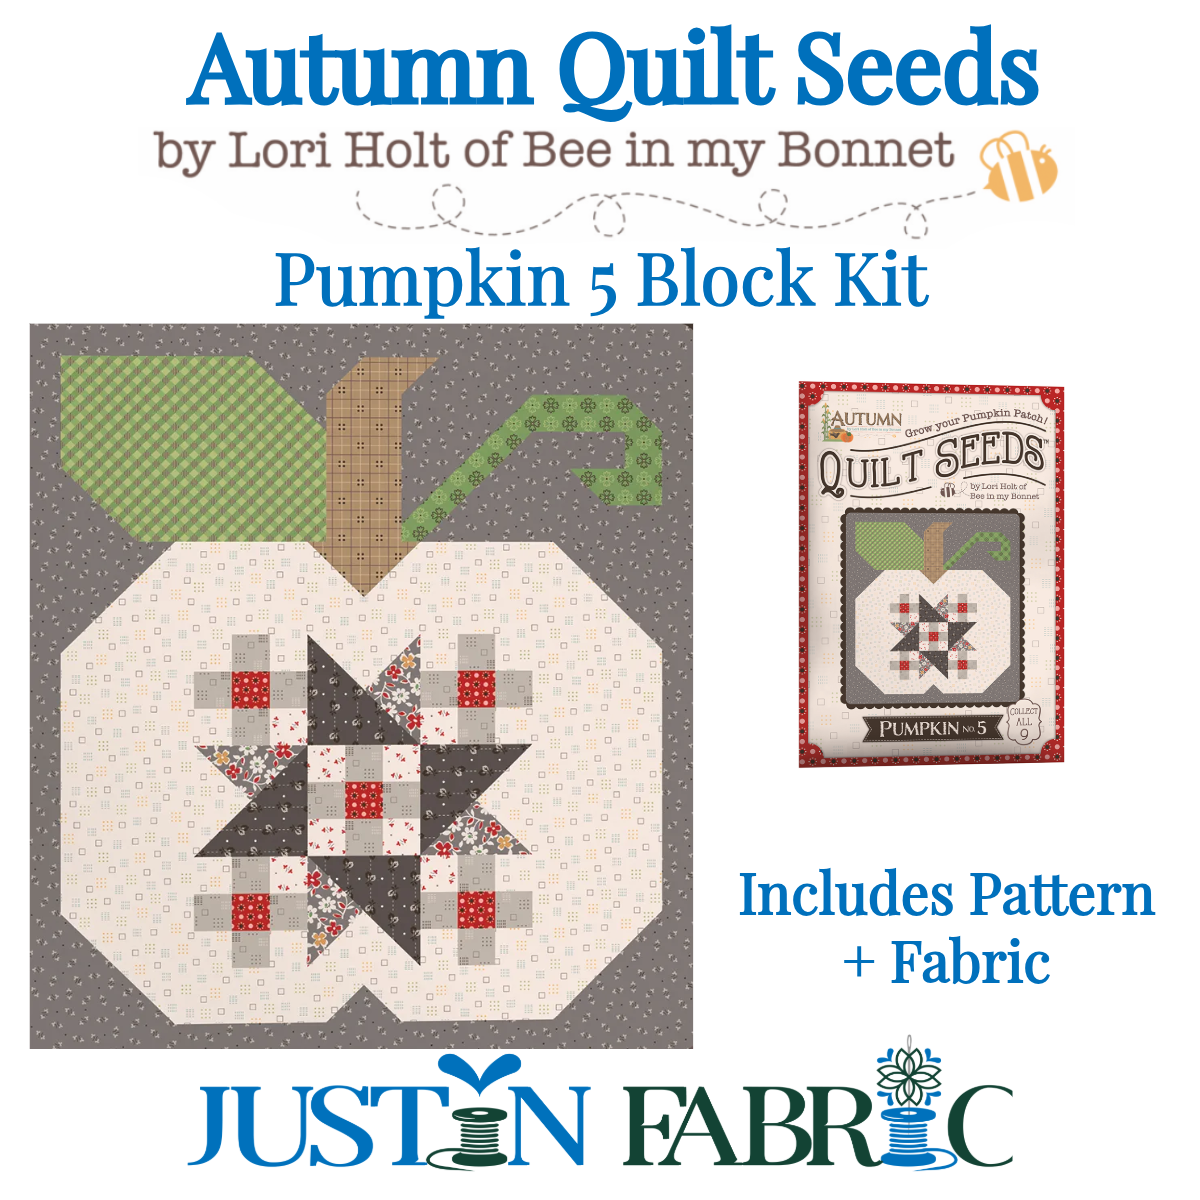 Autumn Quilt Seeds Pumpkin 5 Block Kit Featuring Autumn by Lori Holt